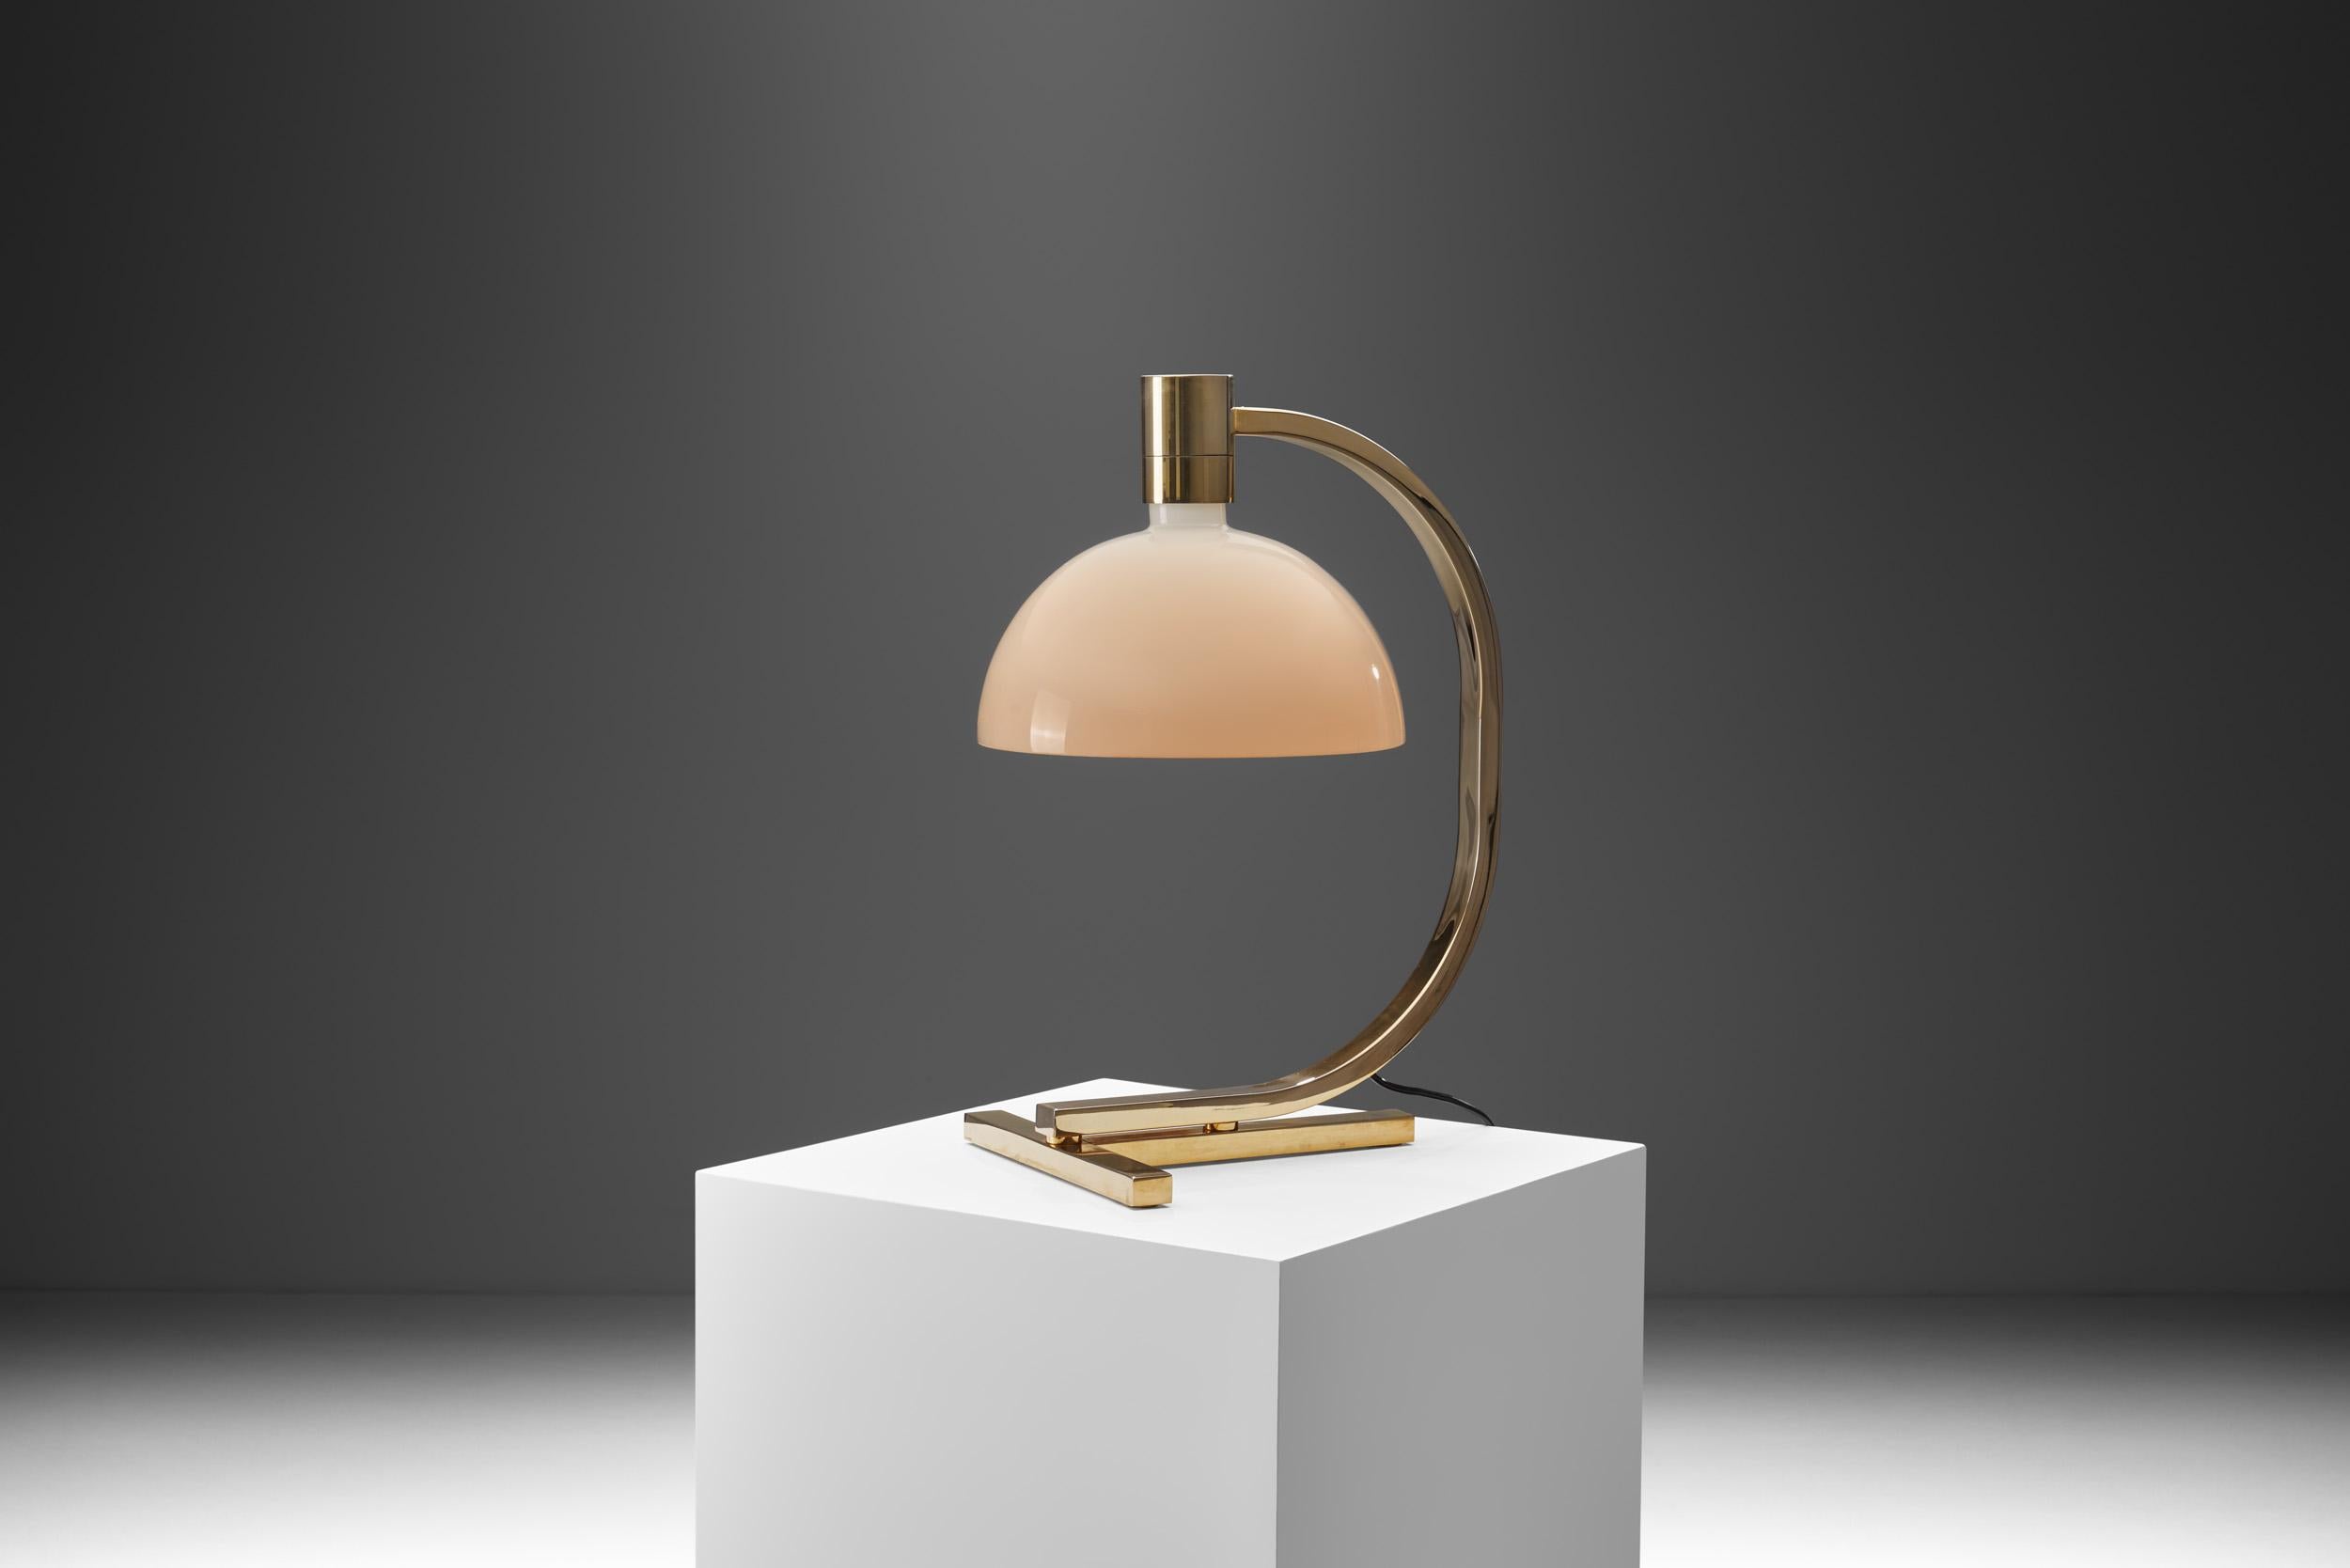 De forme minimale, du concept au design, cette lampe historique est issue d'une pratique artisanale italienne traditionnelle. En utilisant des matériaux modernes et artisanaux pour la conception, les designers ont appliqué une esthétique moderne à